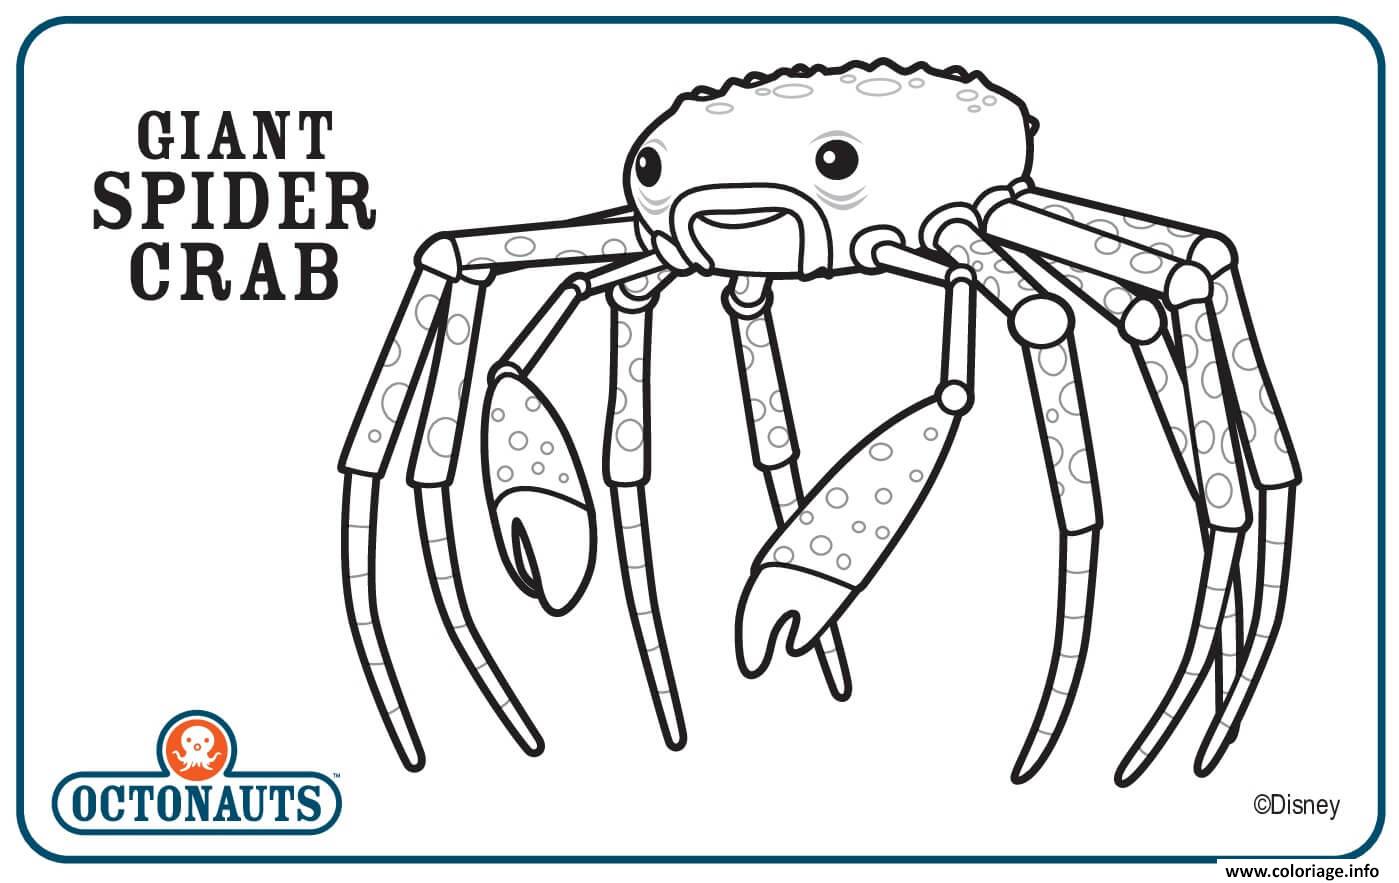 Dessin giant spider crab octonaute creature Coloriage Gratuit à Imprimer